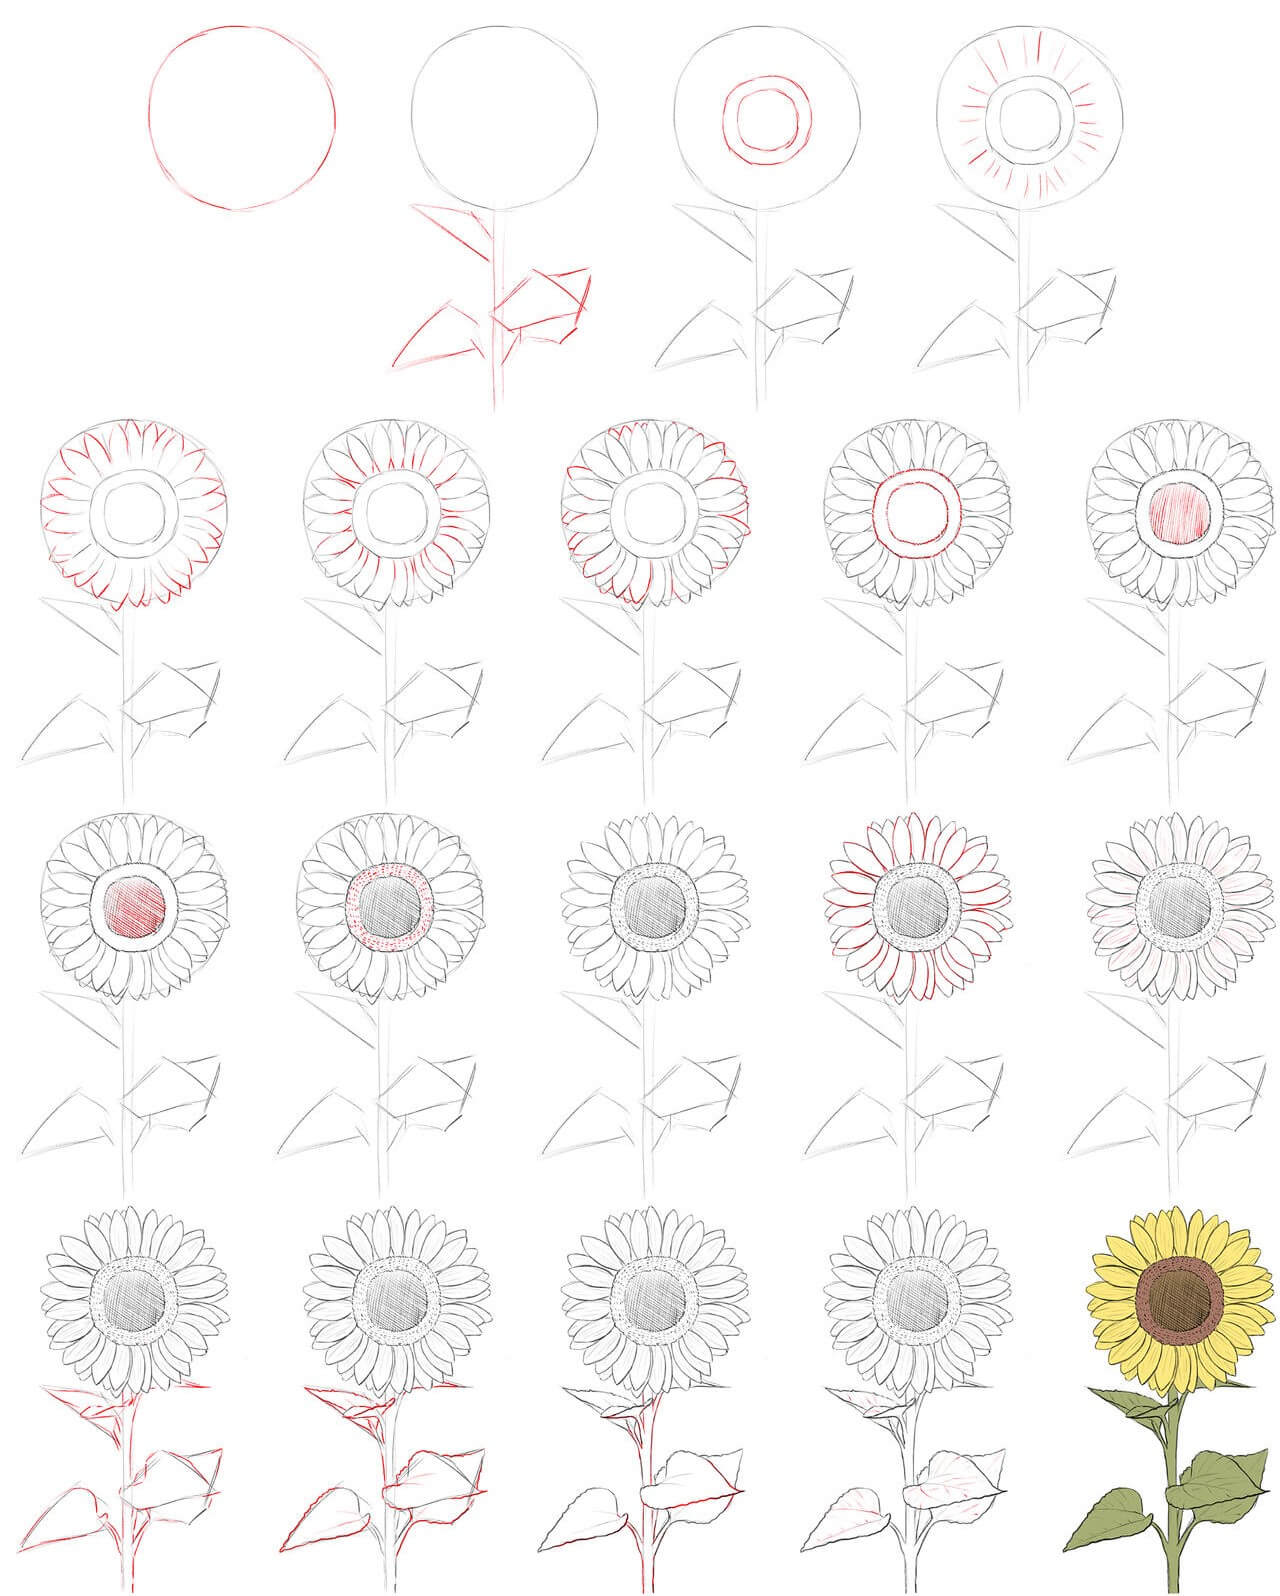 Idee mit Sonnenblumen (6) zeichnen ideen